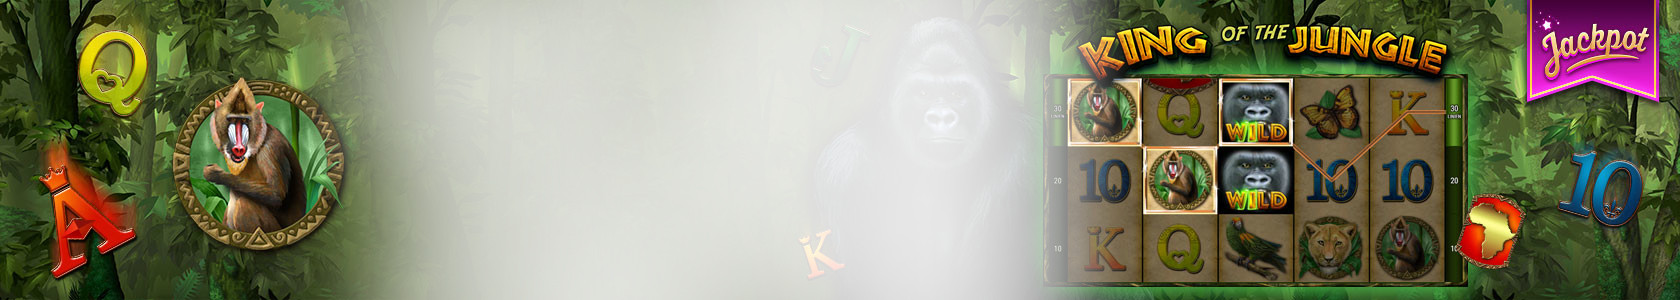 Screen der Videoslot "King of the Jungle" vor einem Dschungel